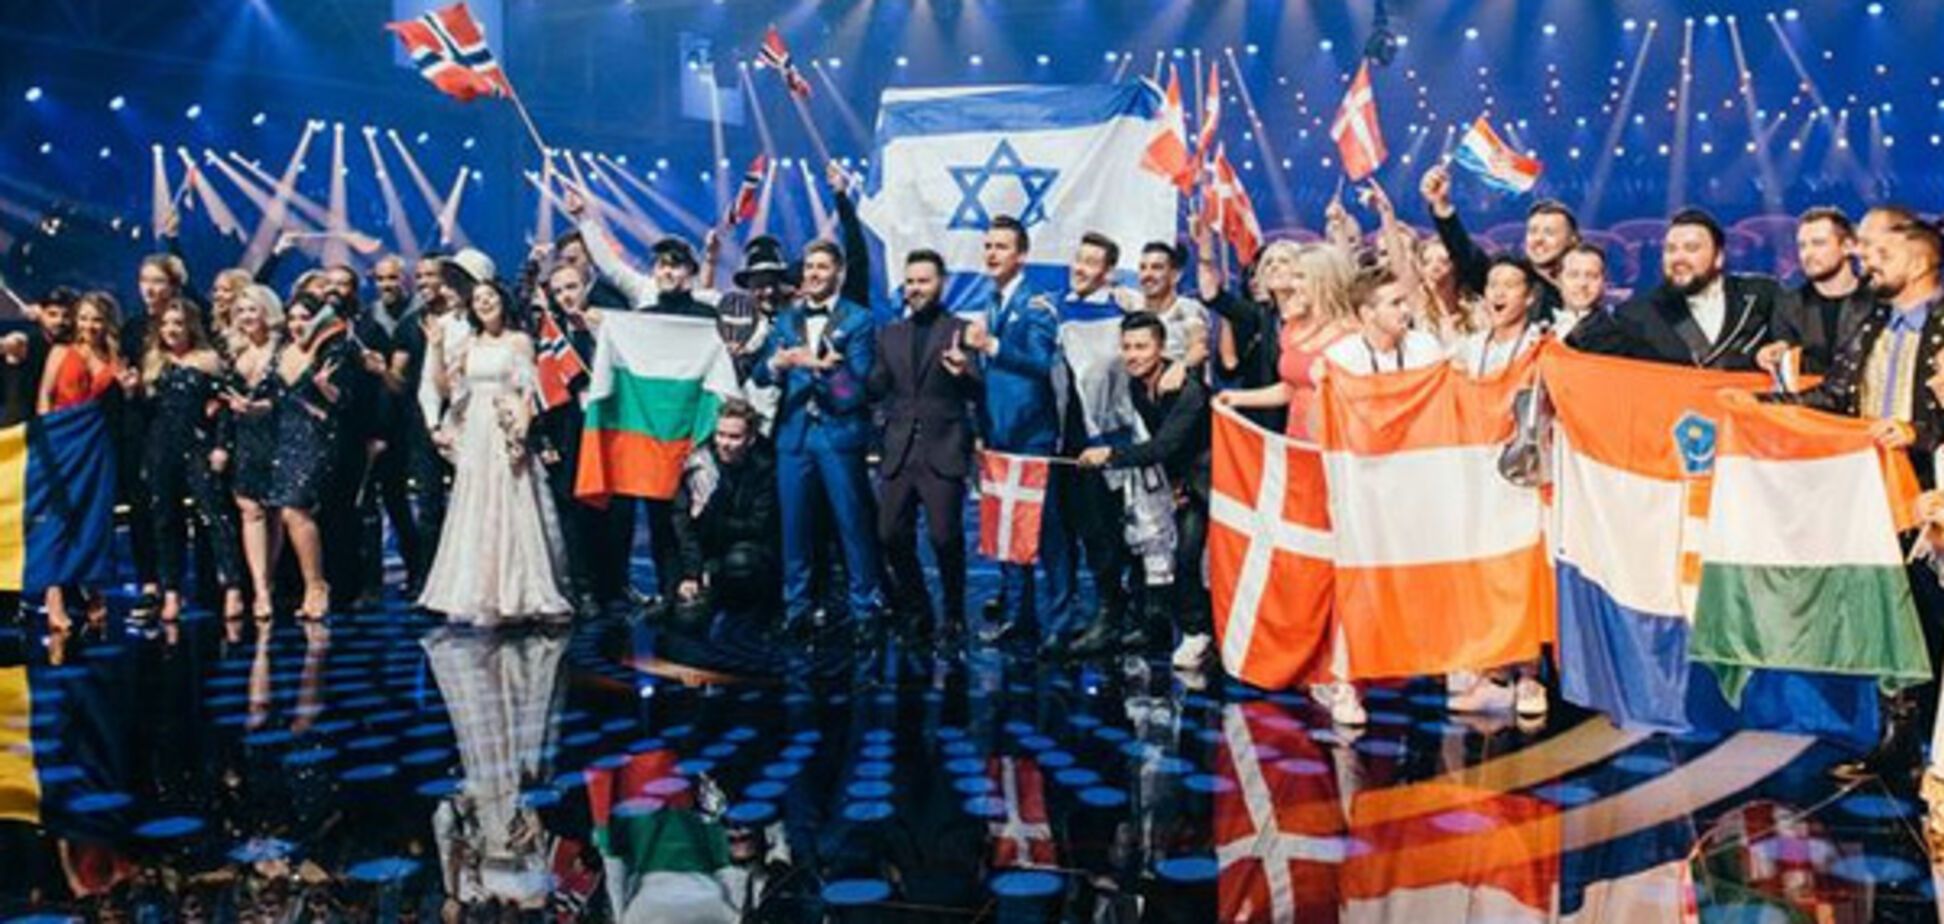 Евровидение-2017